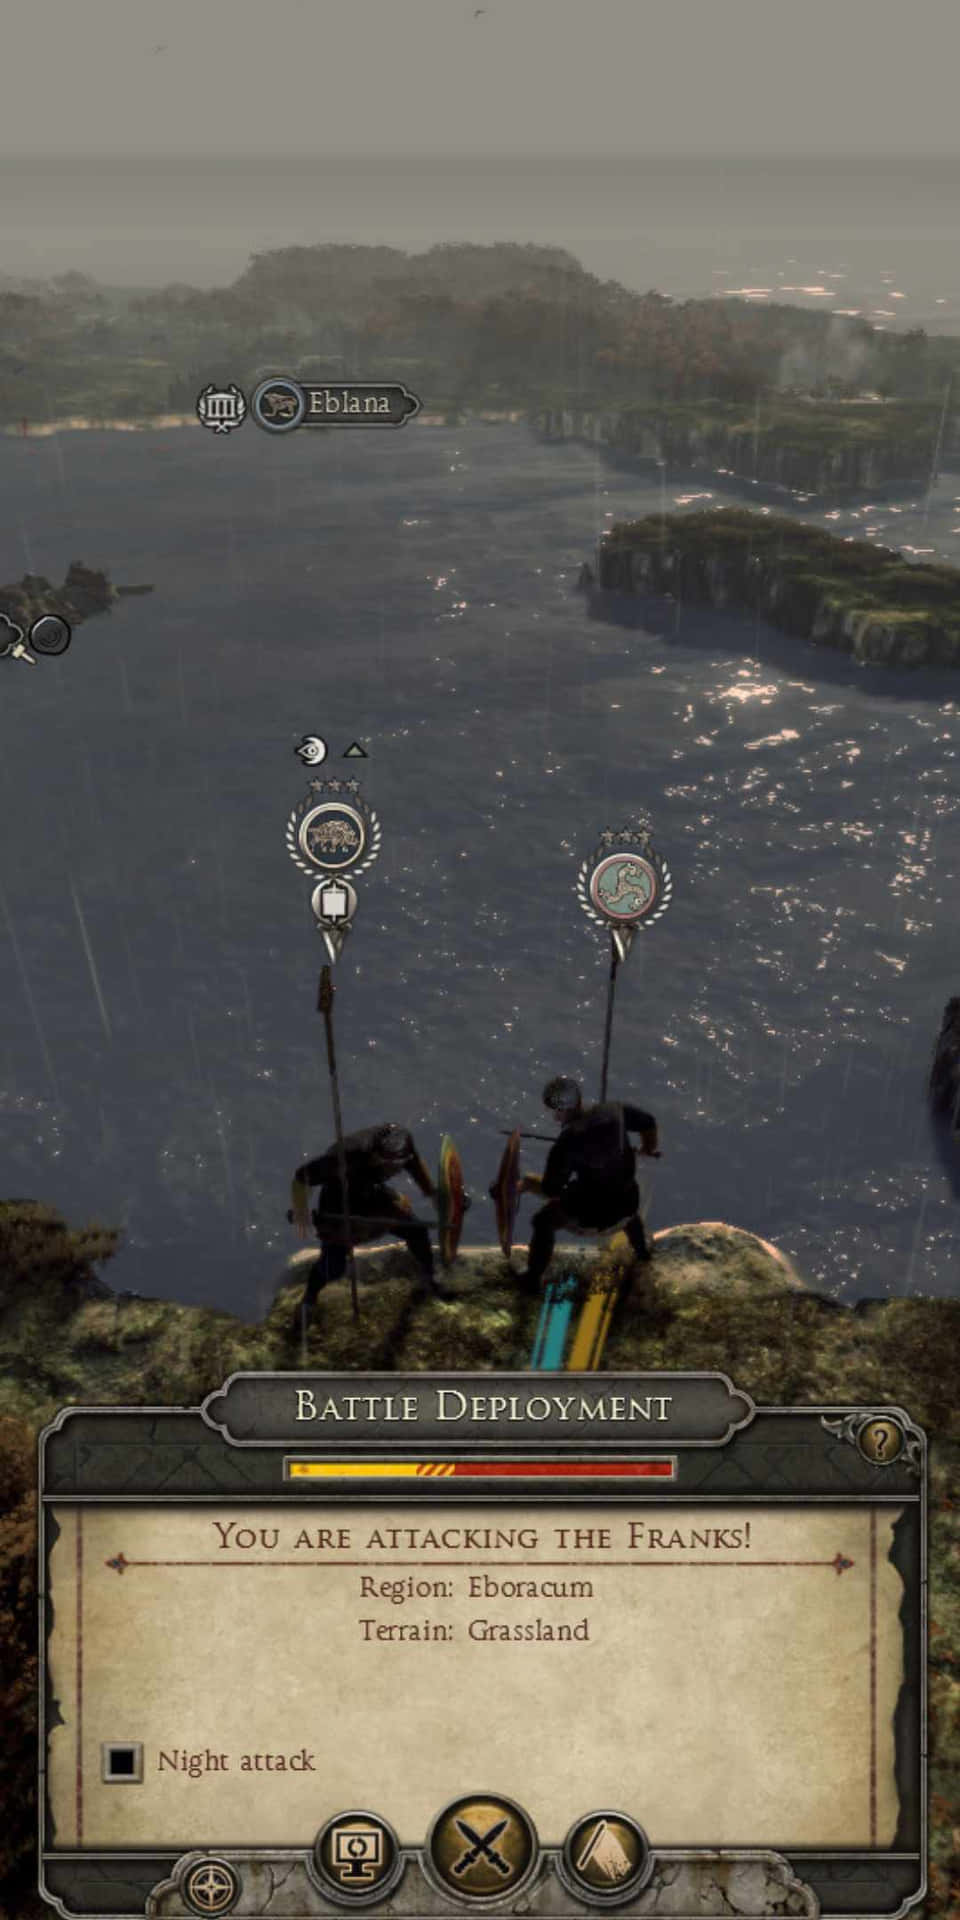 Et skærmbillede af et spil med to personer på en bakke.